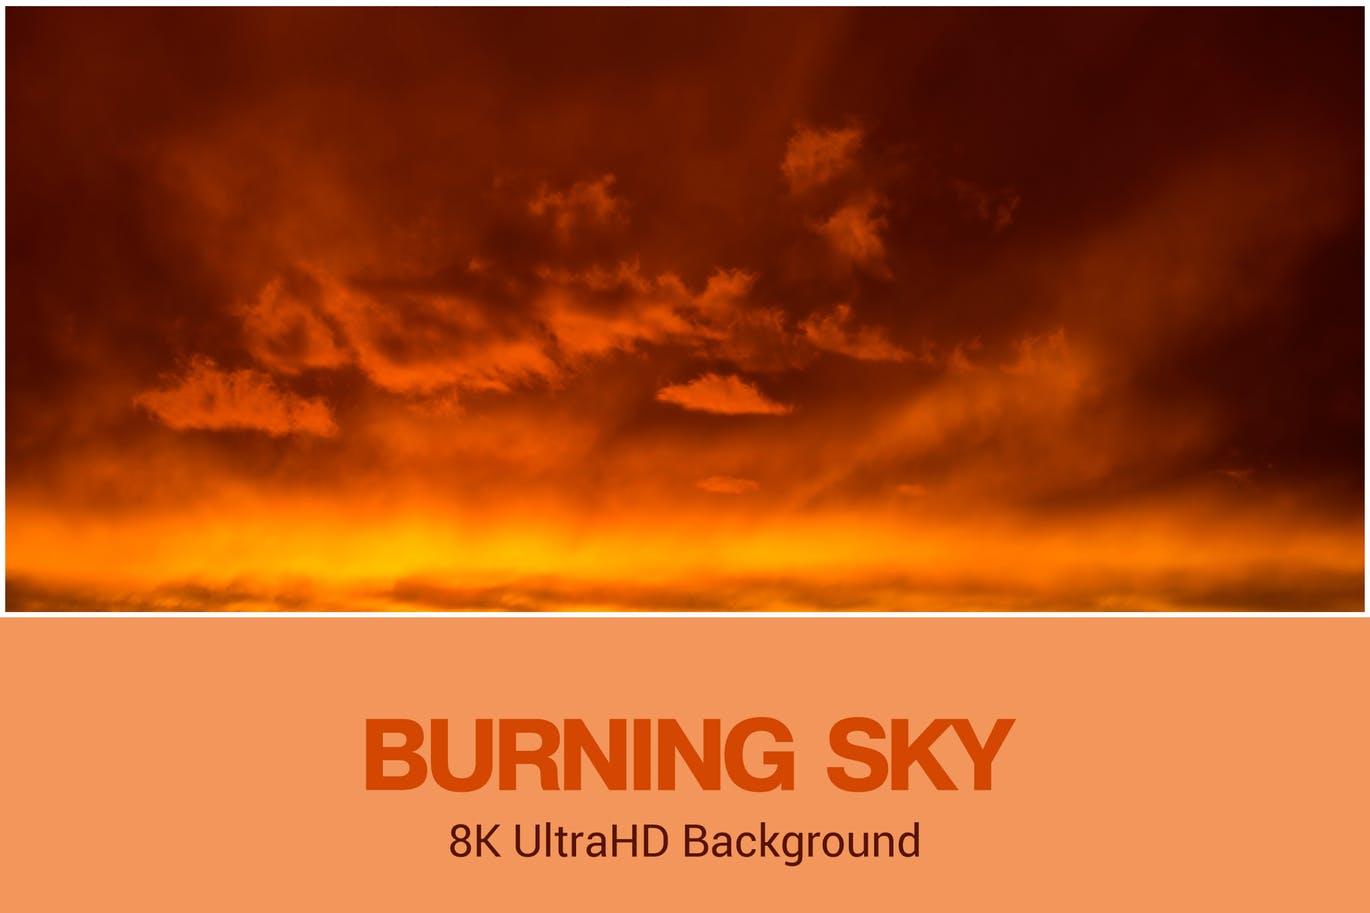 8K超高分辨率火烧云天空背景图素材 8K UltraHD Burning Sky Background插图